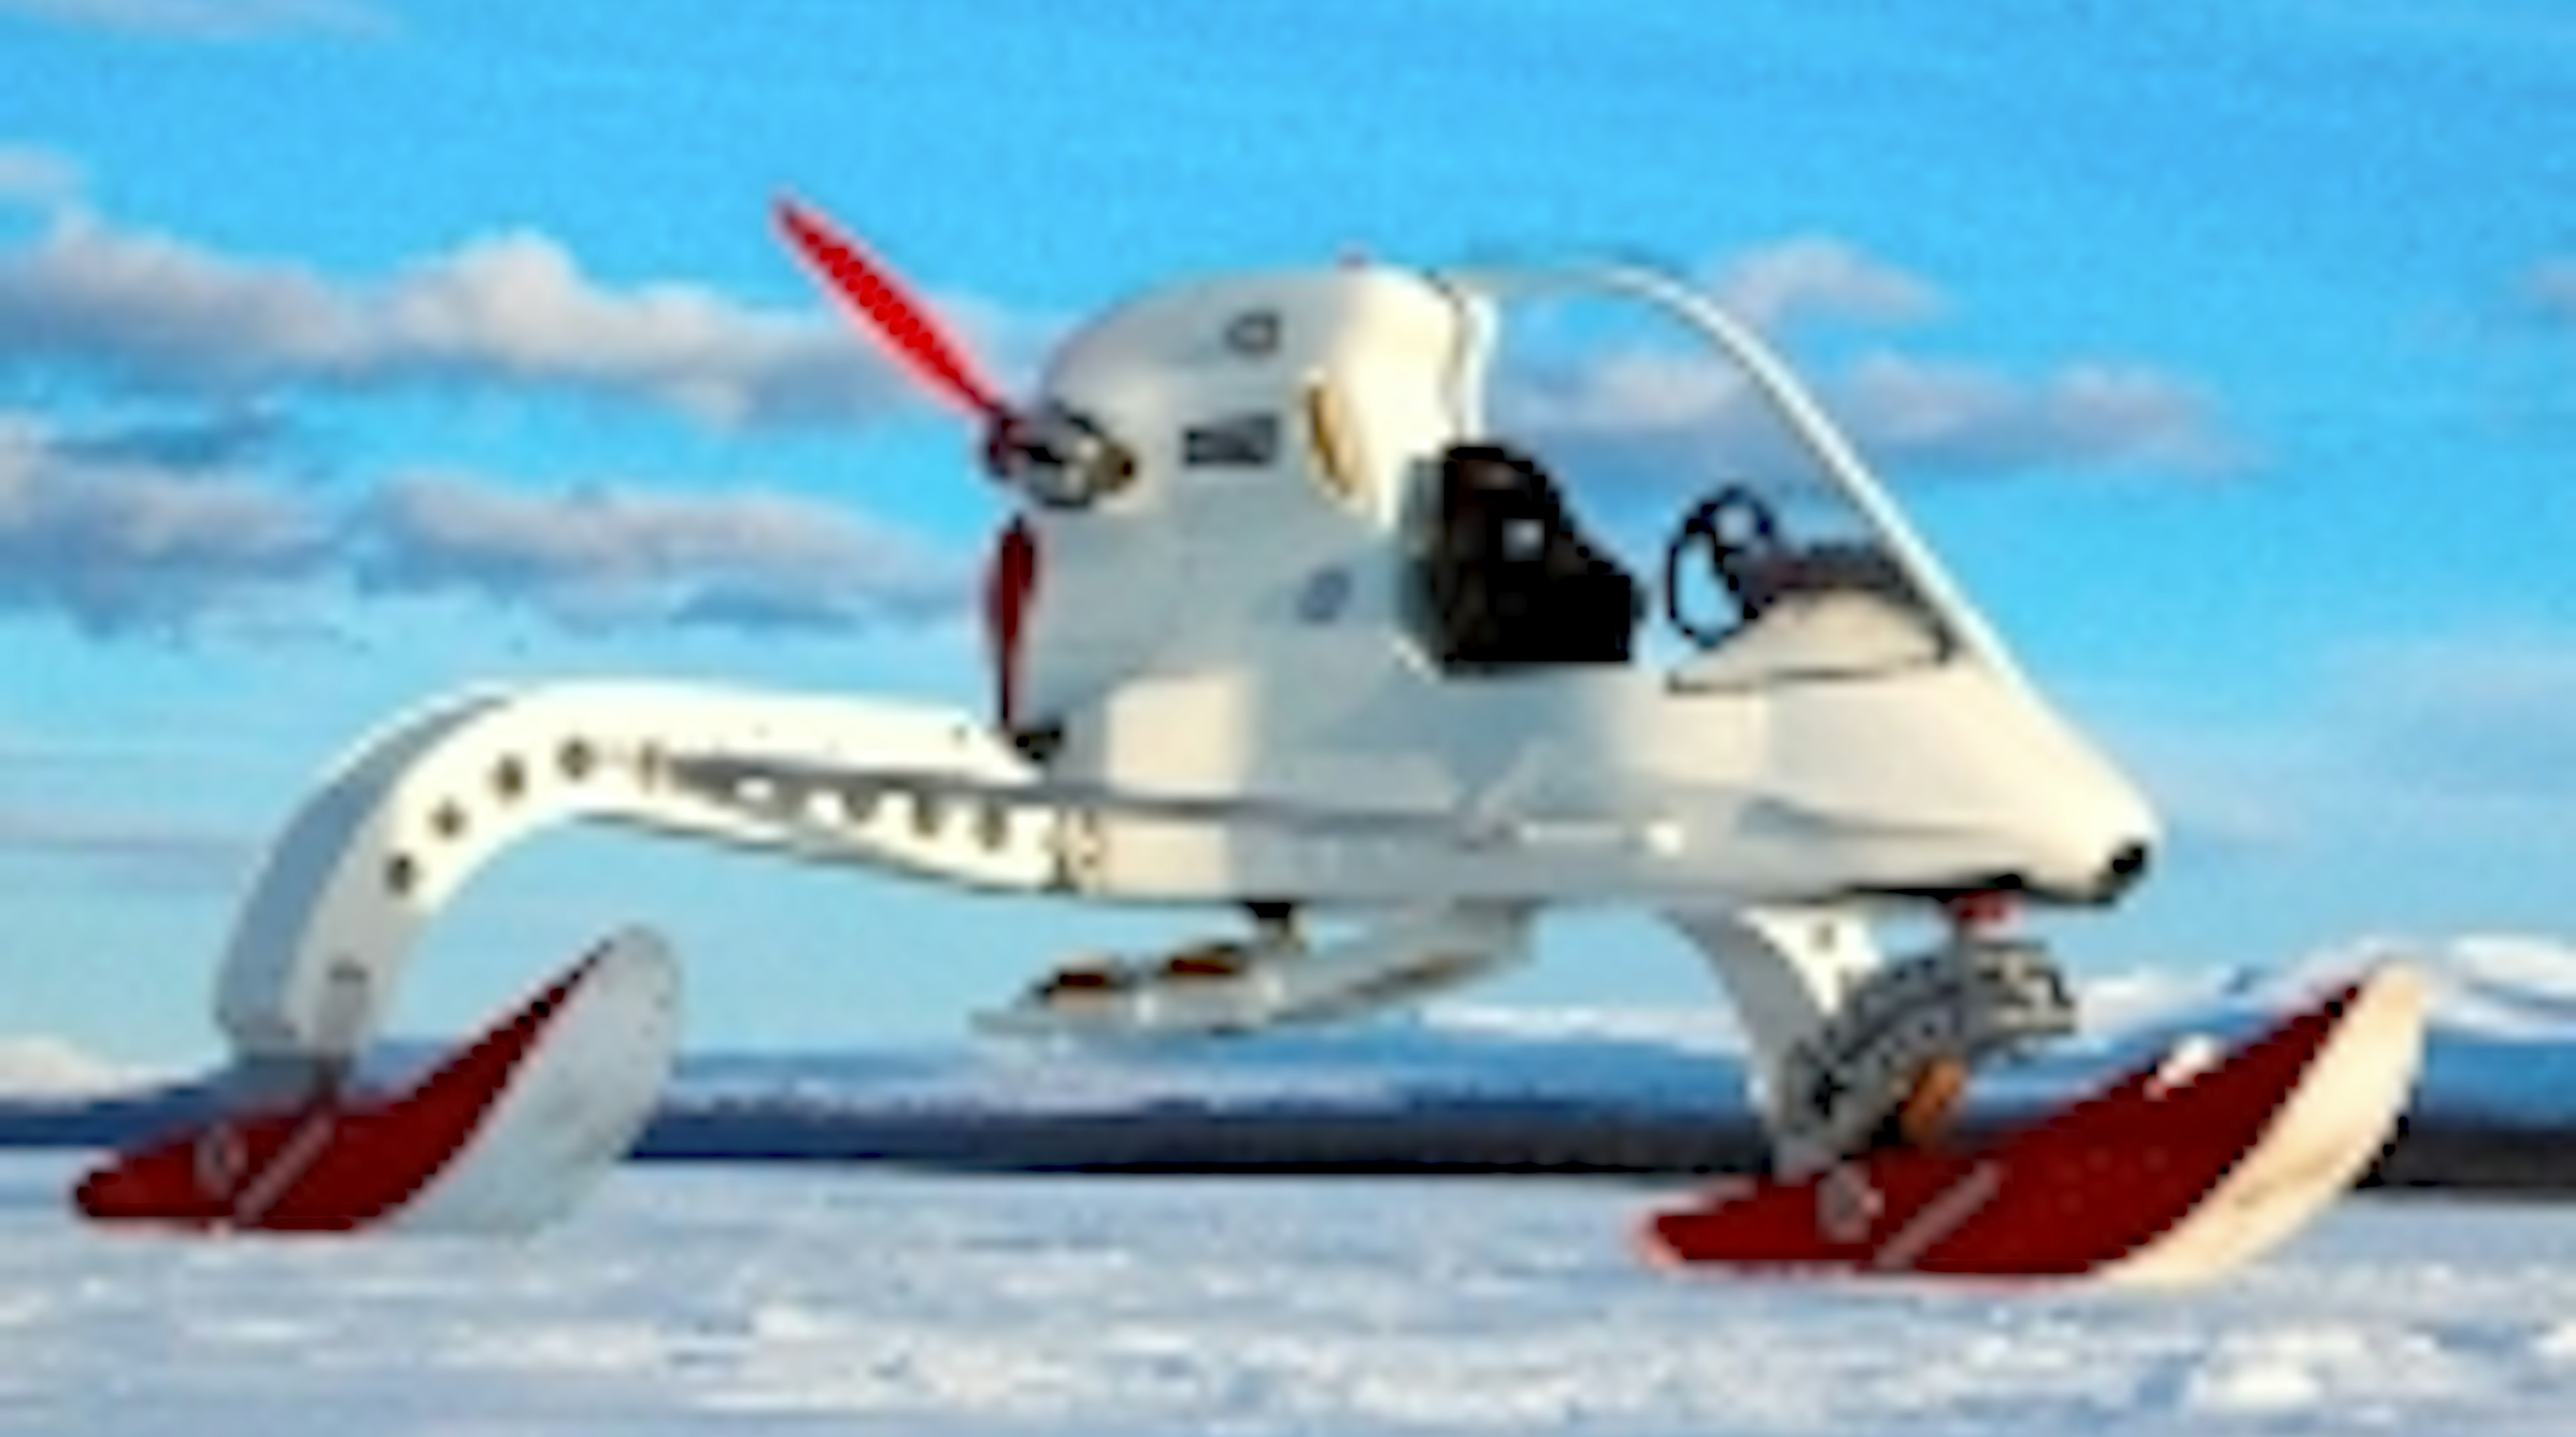 Motor isjakt Antarktis